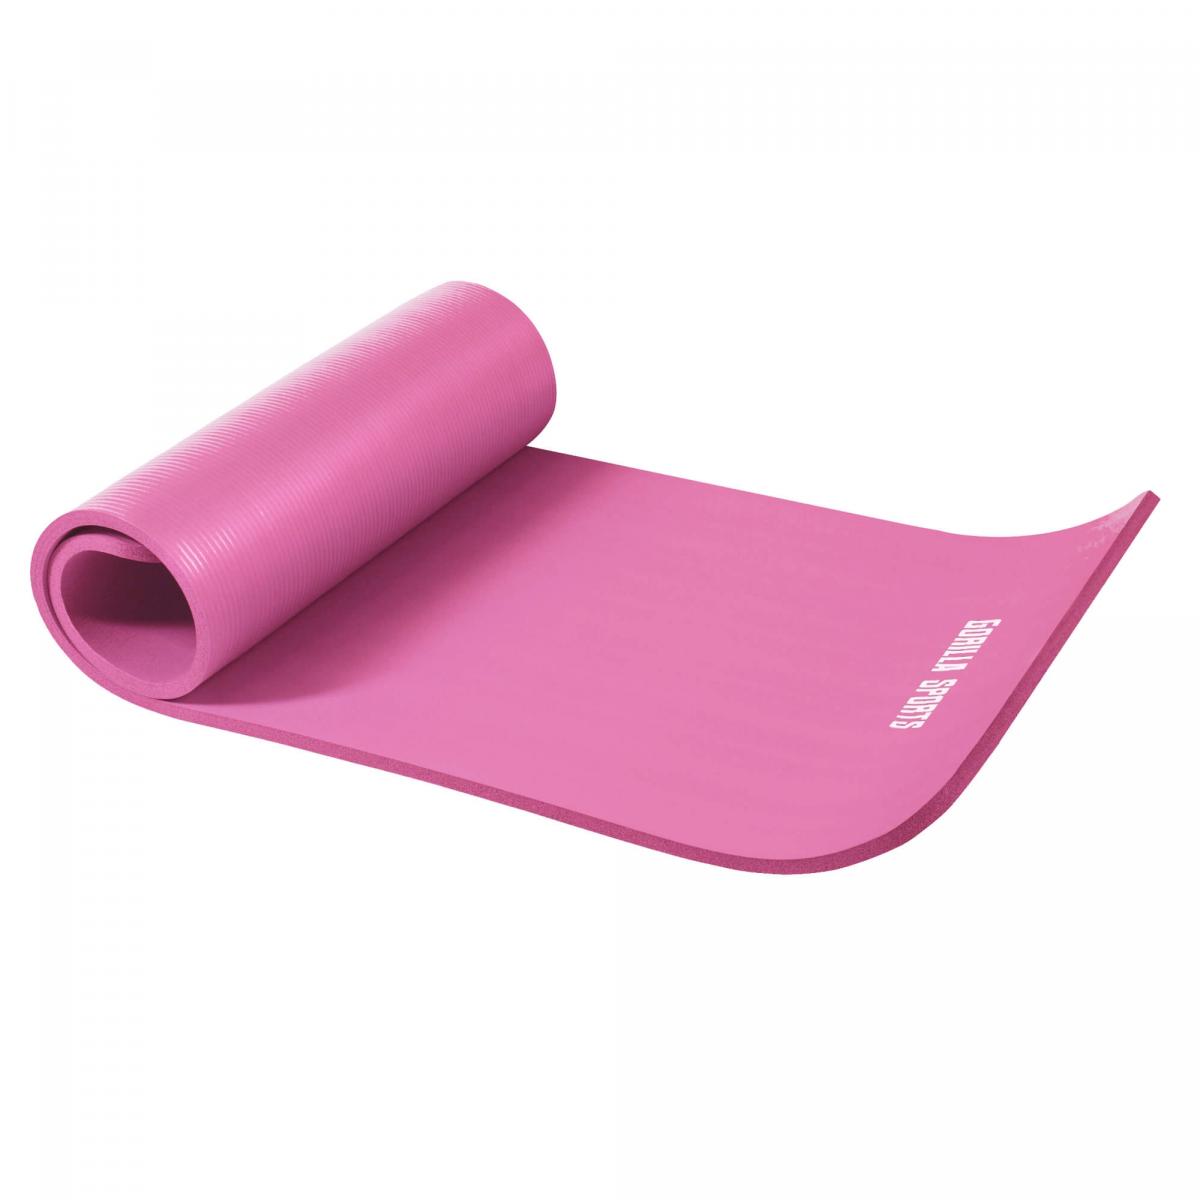 Petit tapis de yoga en mousse - 190 x 60 x 1,5 cm (Yoga - Pilates - sport Ã domicile) Fuchsia